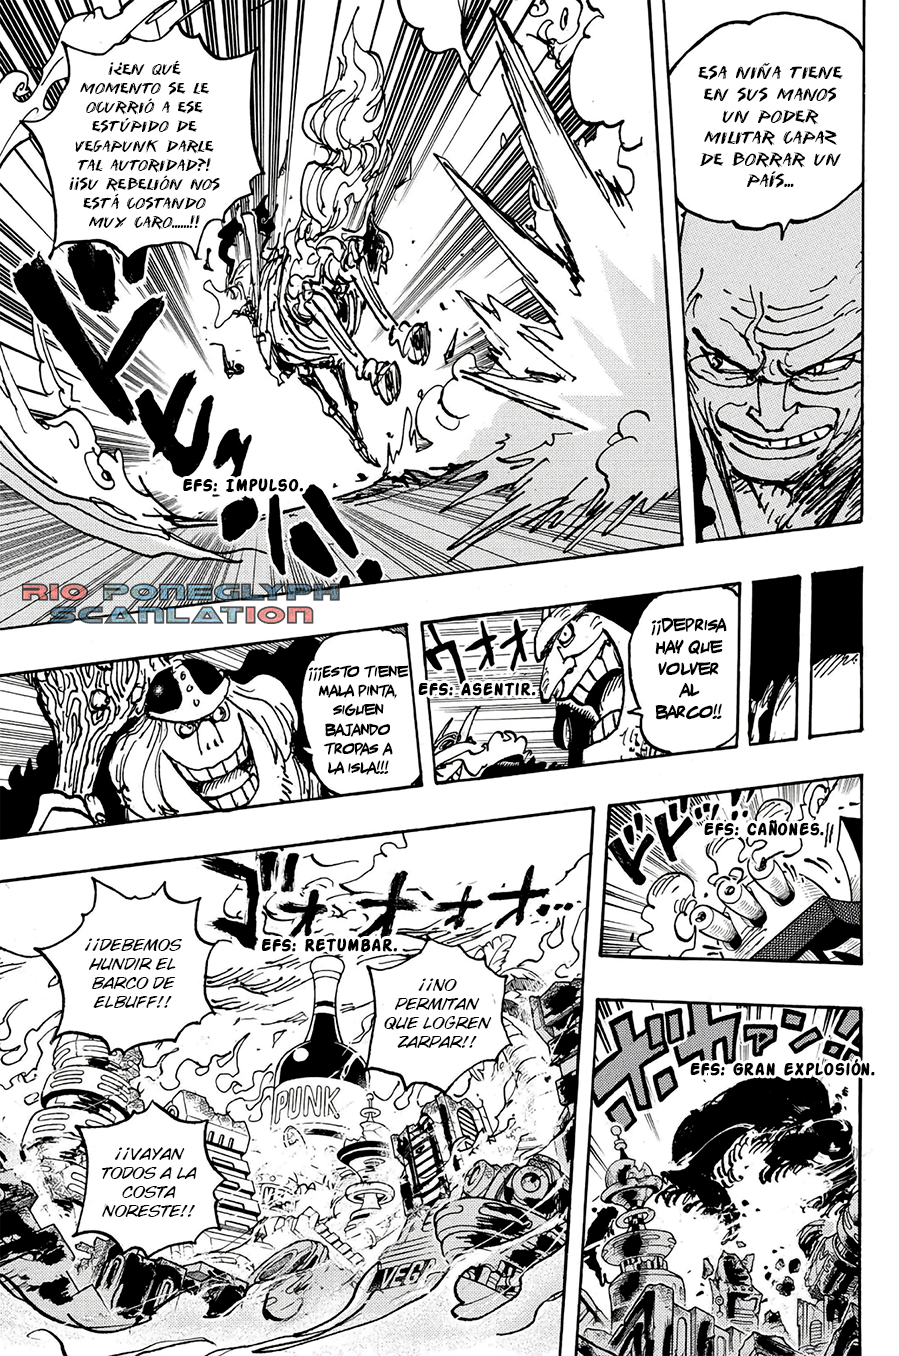 piece - One Piece Manga 1112 [Español] [Rio Poneglyph Scans] 02-2